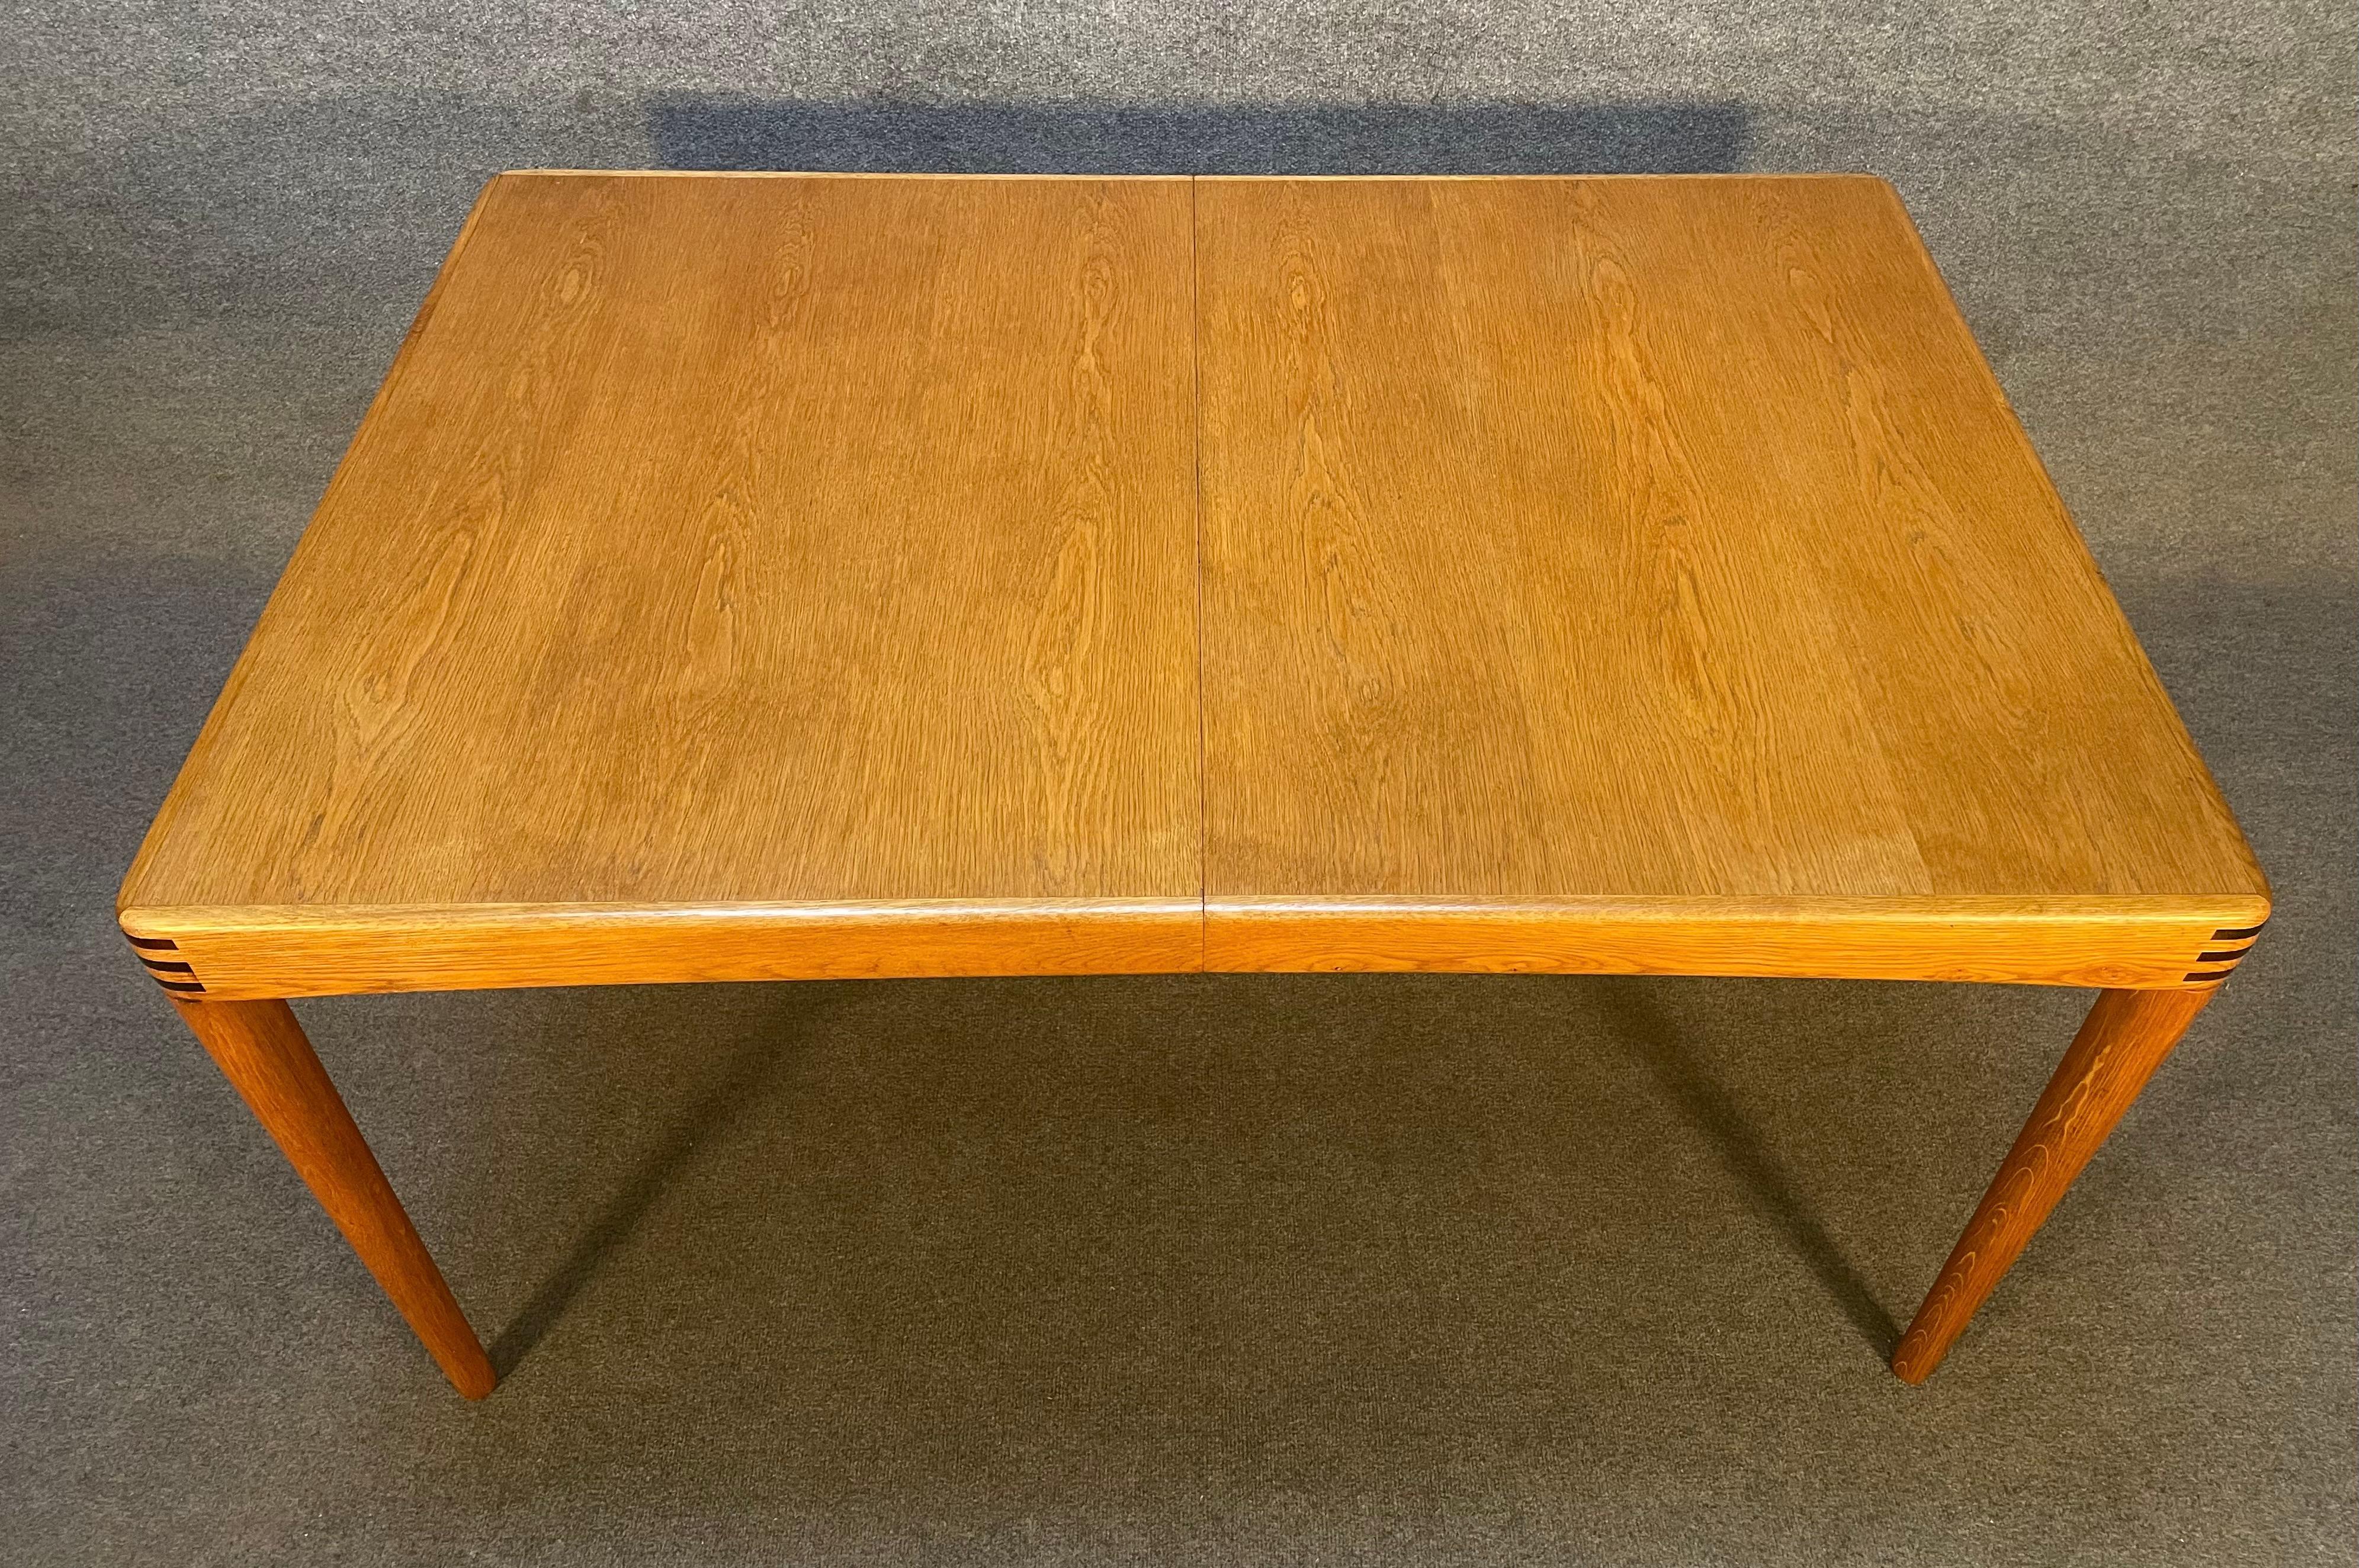 Voici une magnifique table à manger moderne scandinave en chêne conçue par H.W. Klein et fabriquée par Bramin Mobler au Danemark dans les années 1960.
Cette table exquise, récemment importée d'Europe en Californie avant sa remise en état, présente